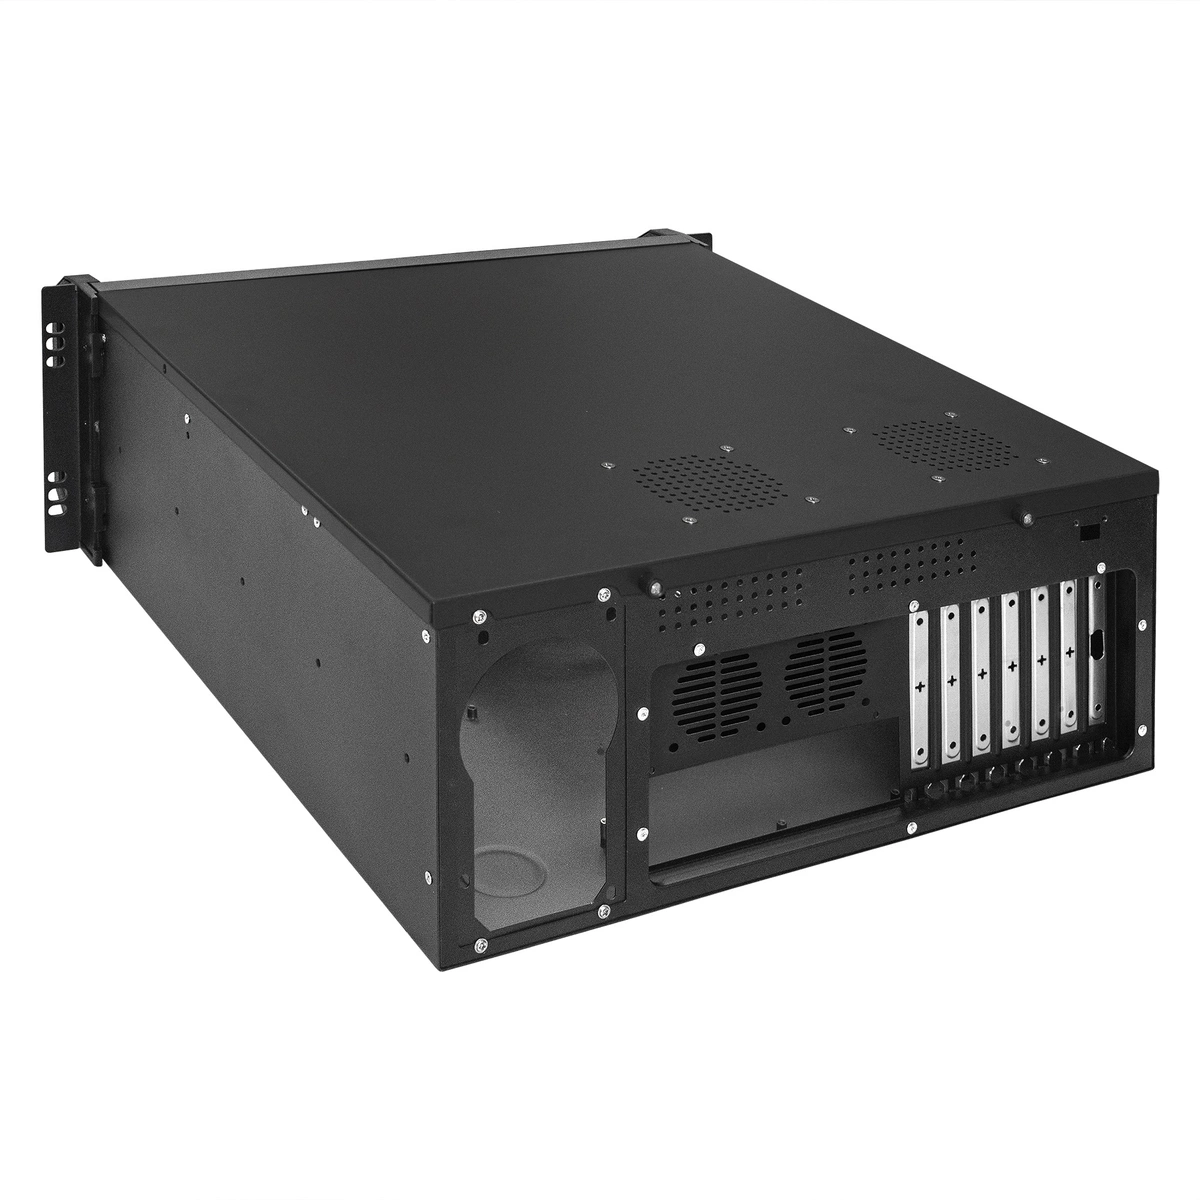 4u Rackmount Server Computer Case